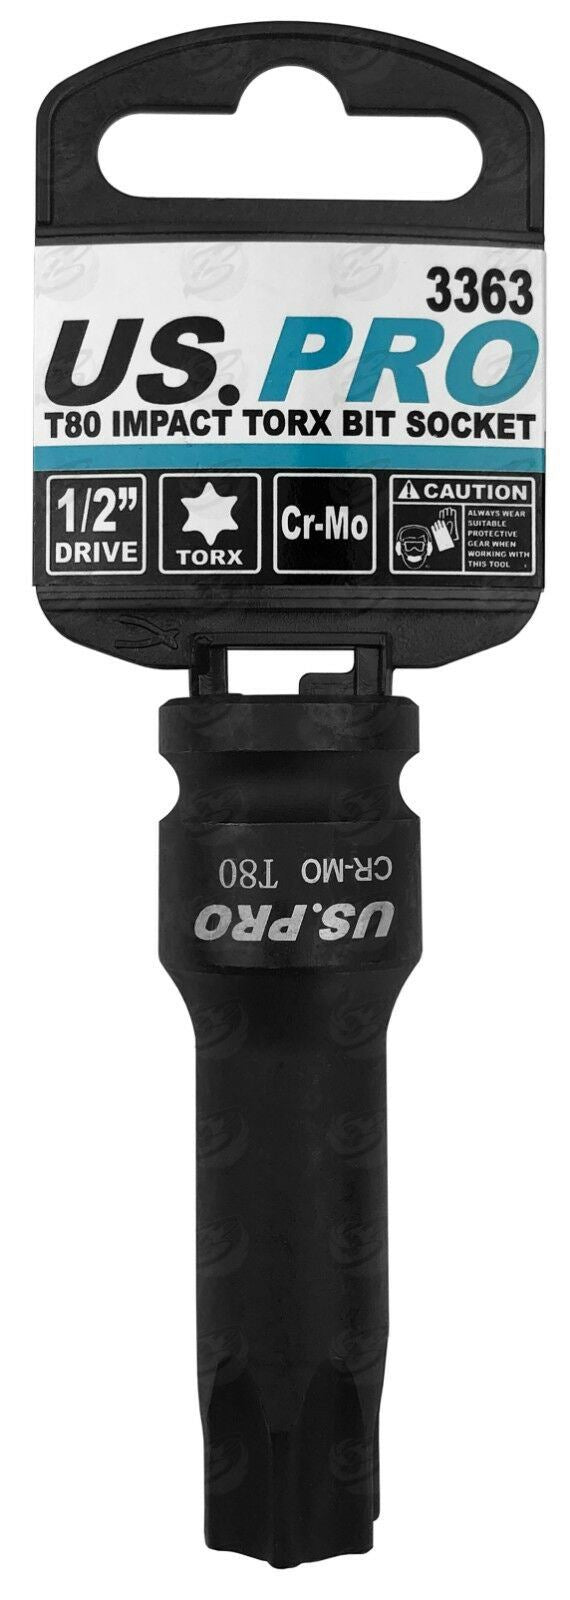 US PRO T80 1/2" DRIVE 78MM LONG IMPACT TORX BIT SOCKET ( SINGLE )